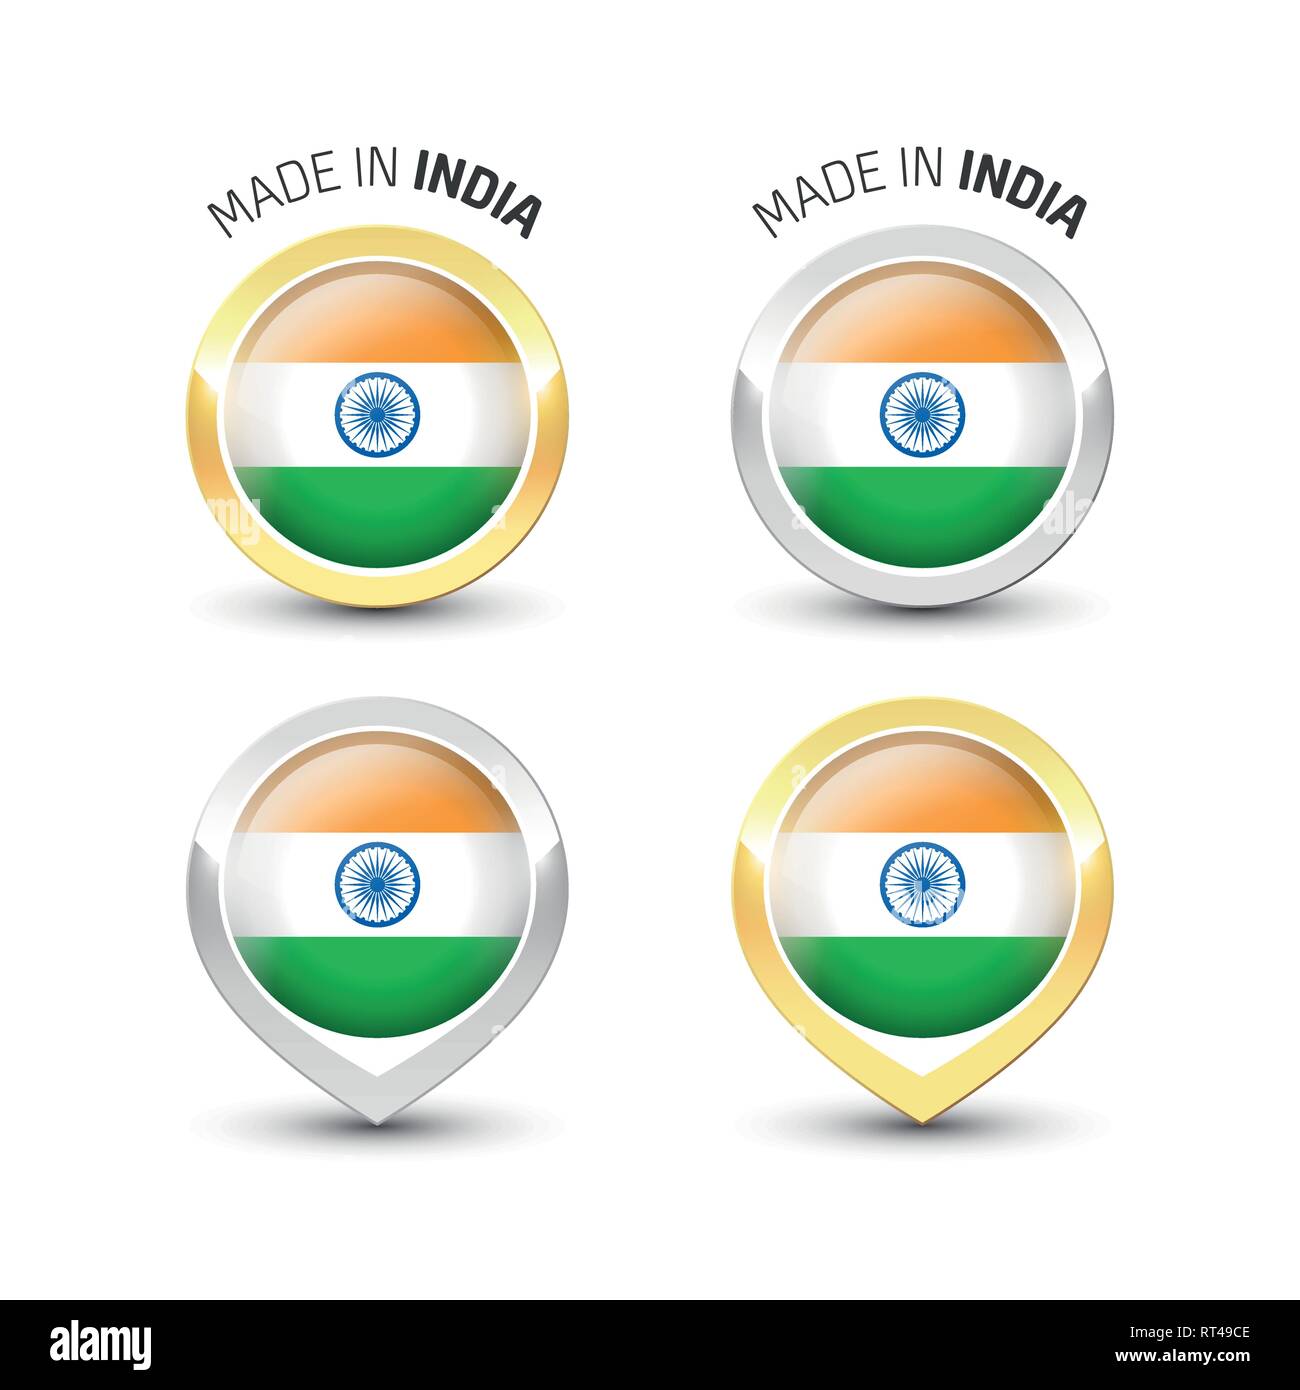 In Indien - Garantie Label mit der indischen Flagge runde Gold und Silber Symbole gemacht. Stock Vektor